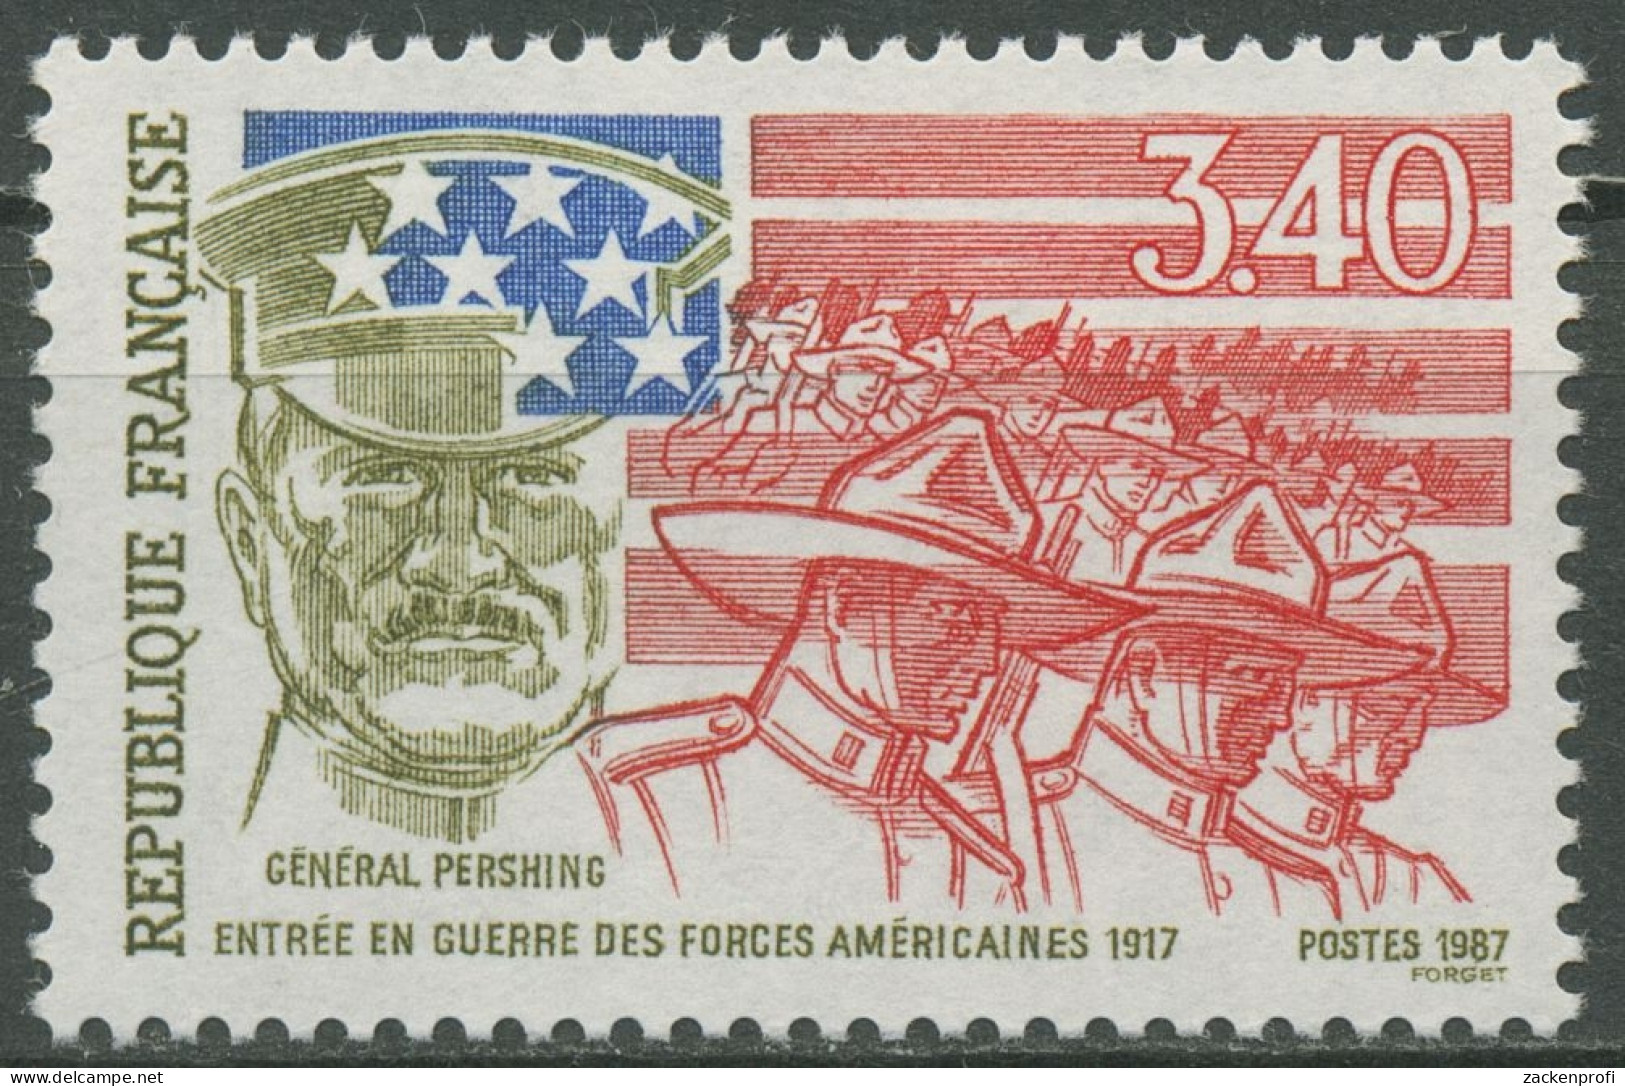 Frankreich 1987 USA Beginn Erster Weltkrieg 2612 Postfrisch - Nuovi